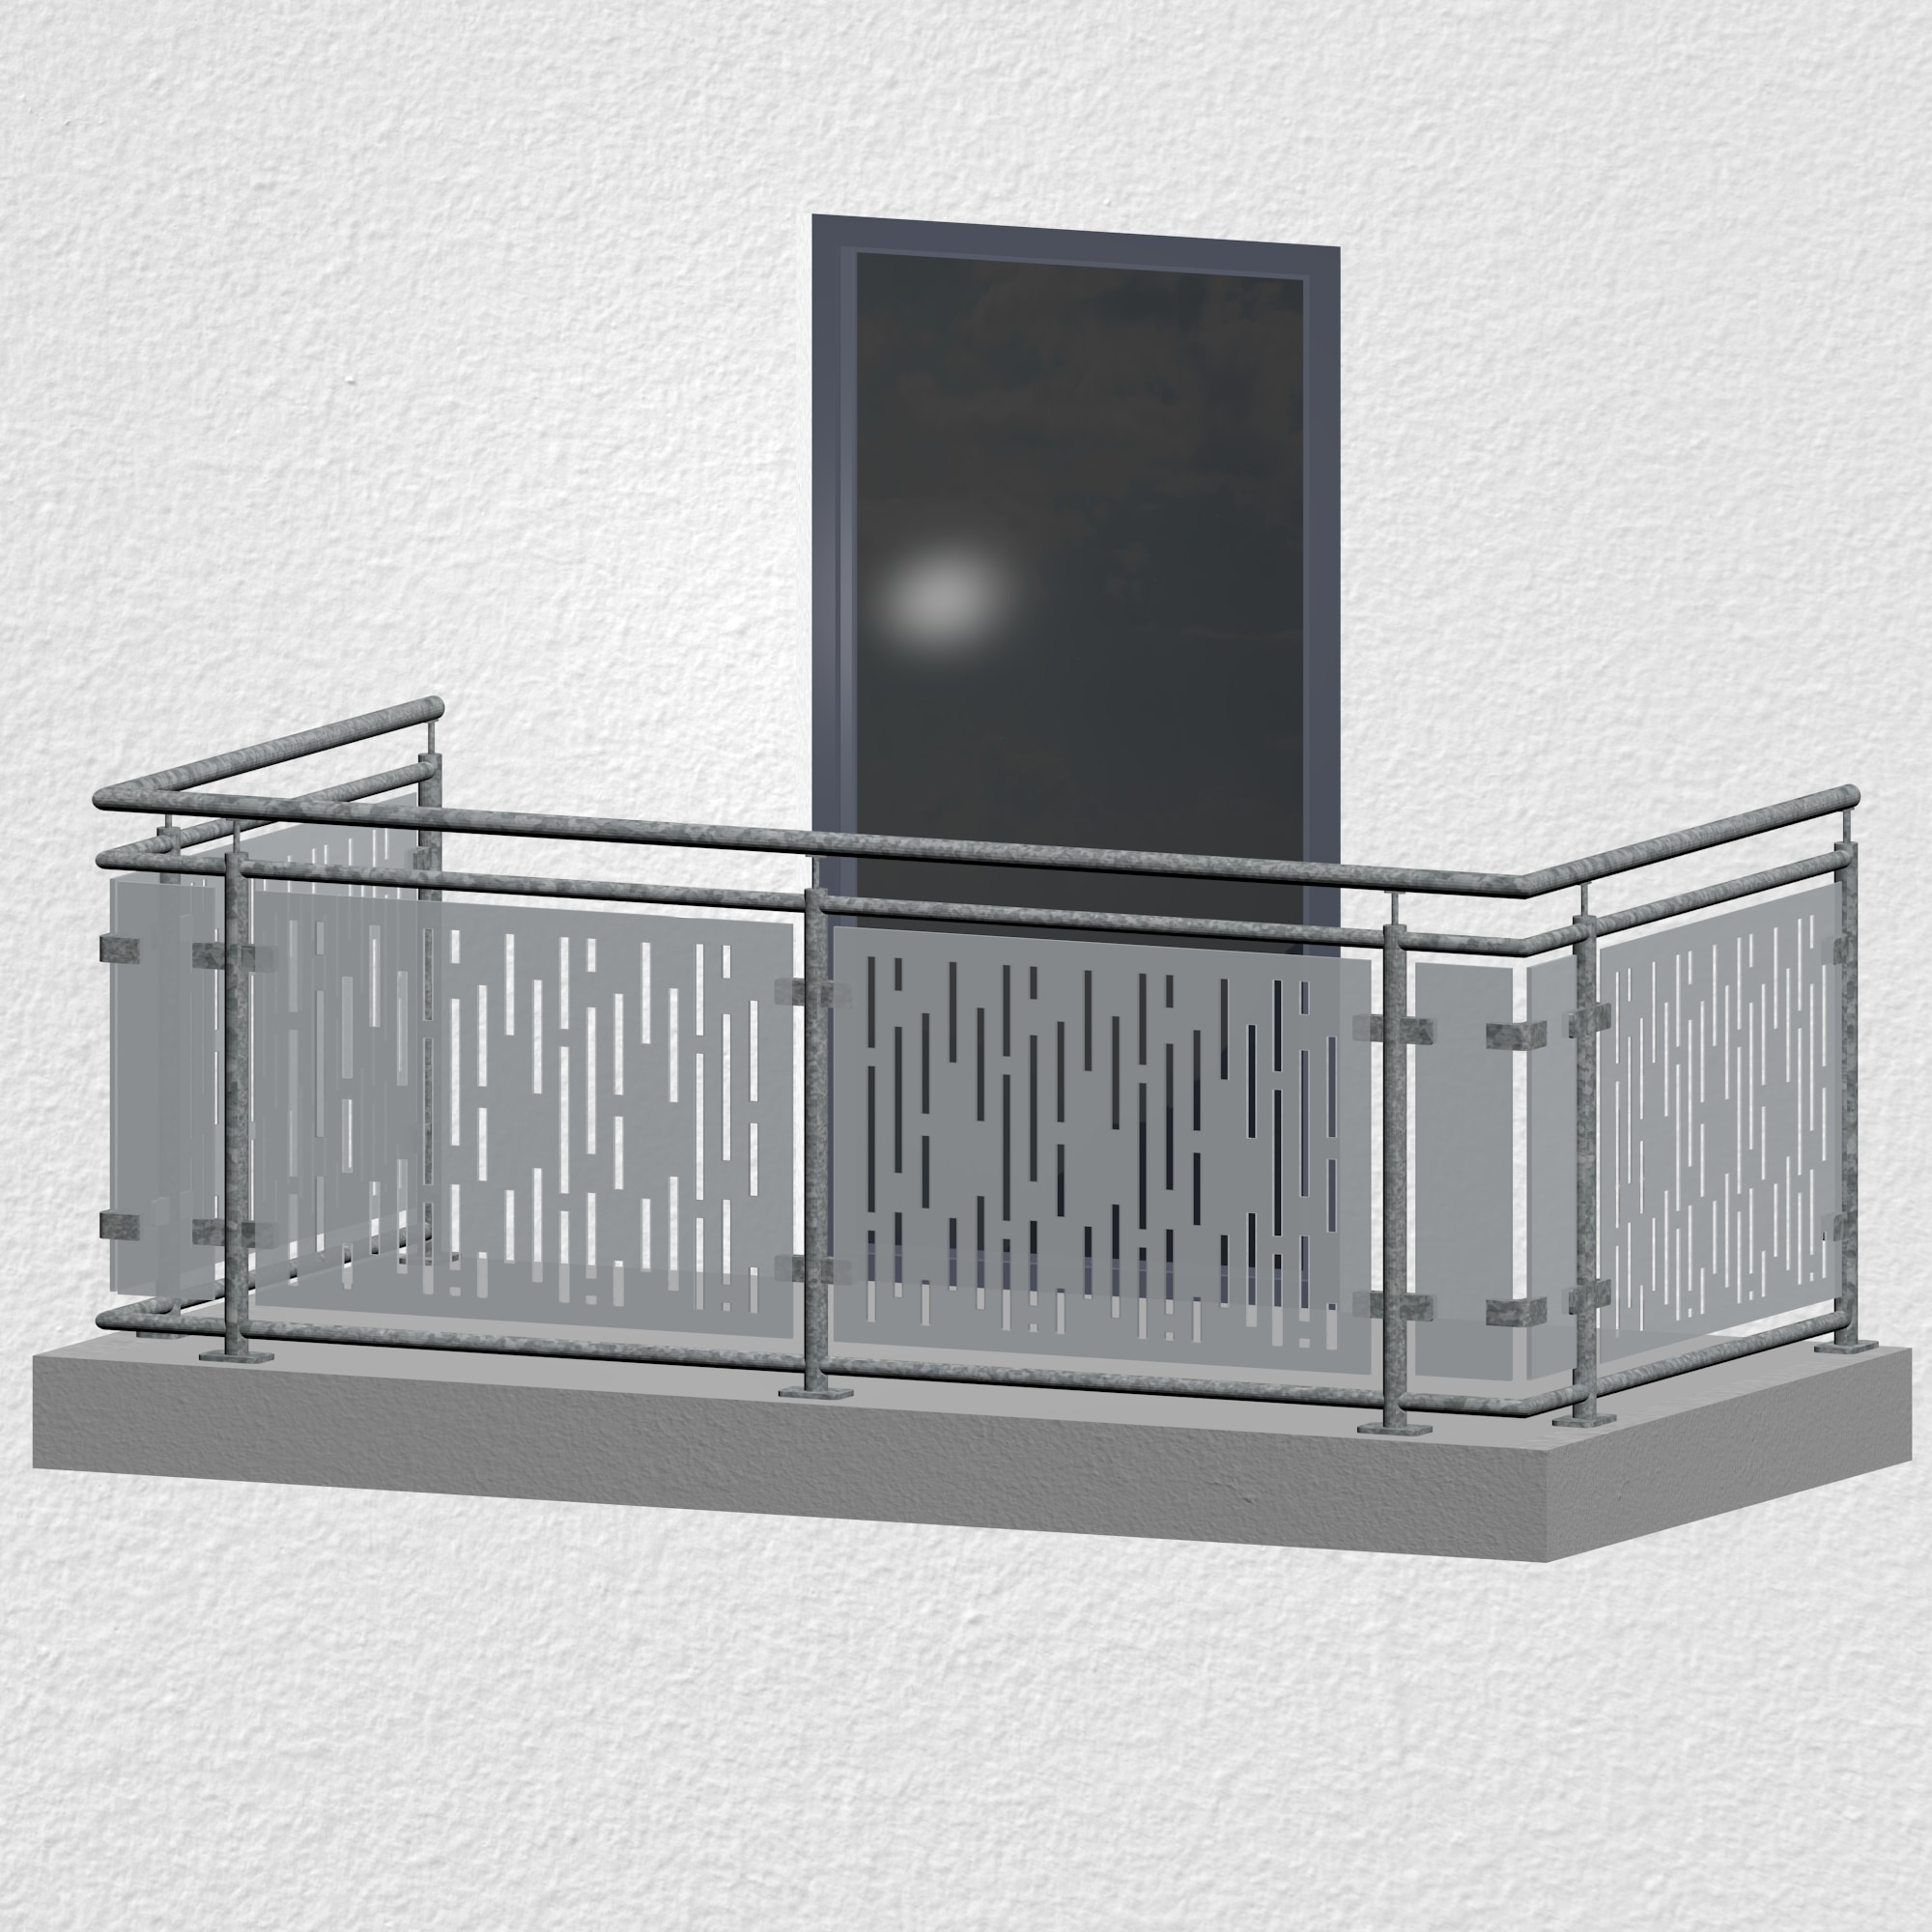 Balkonhek verzinkt Design glas SF VE